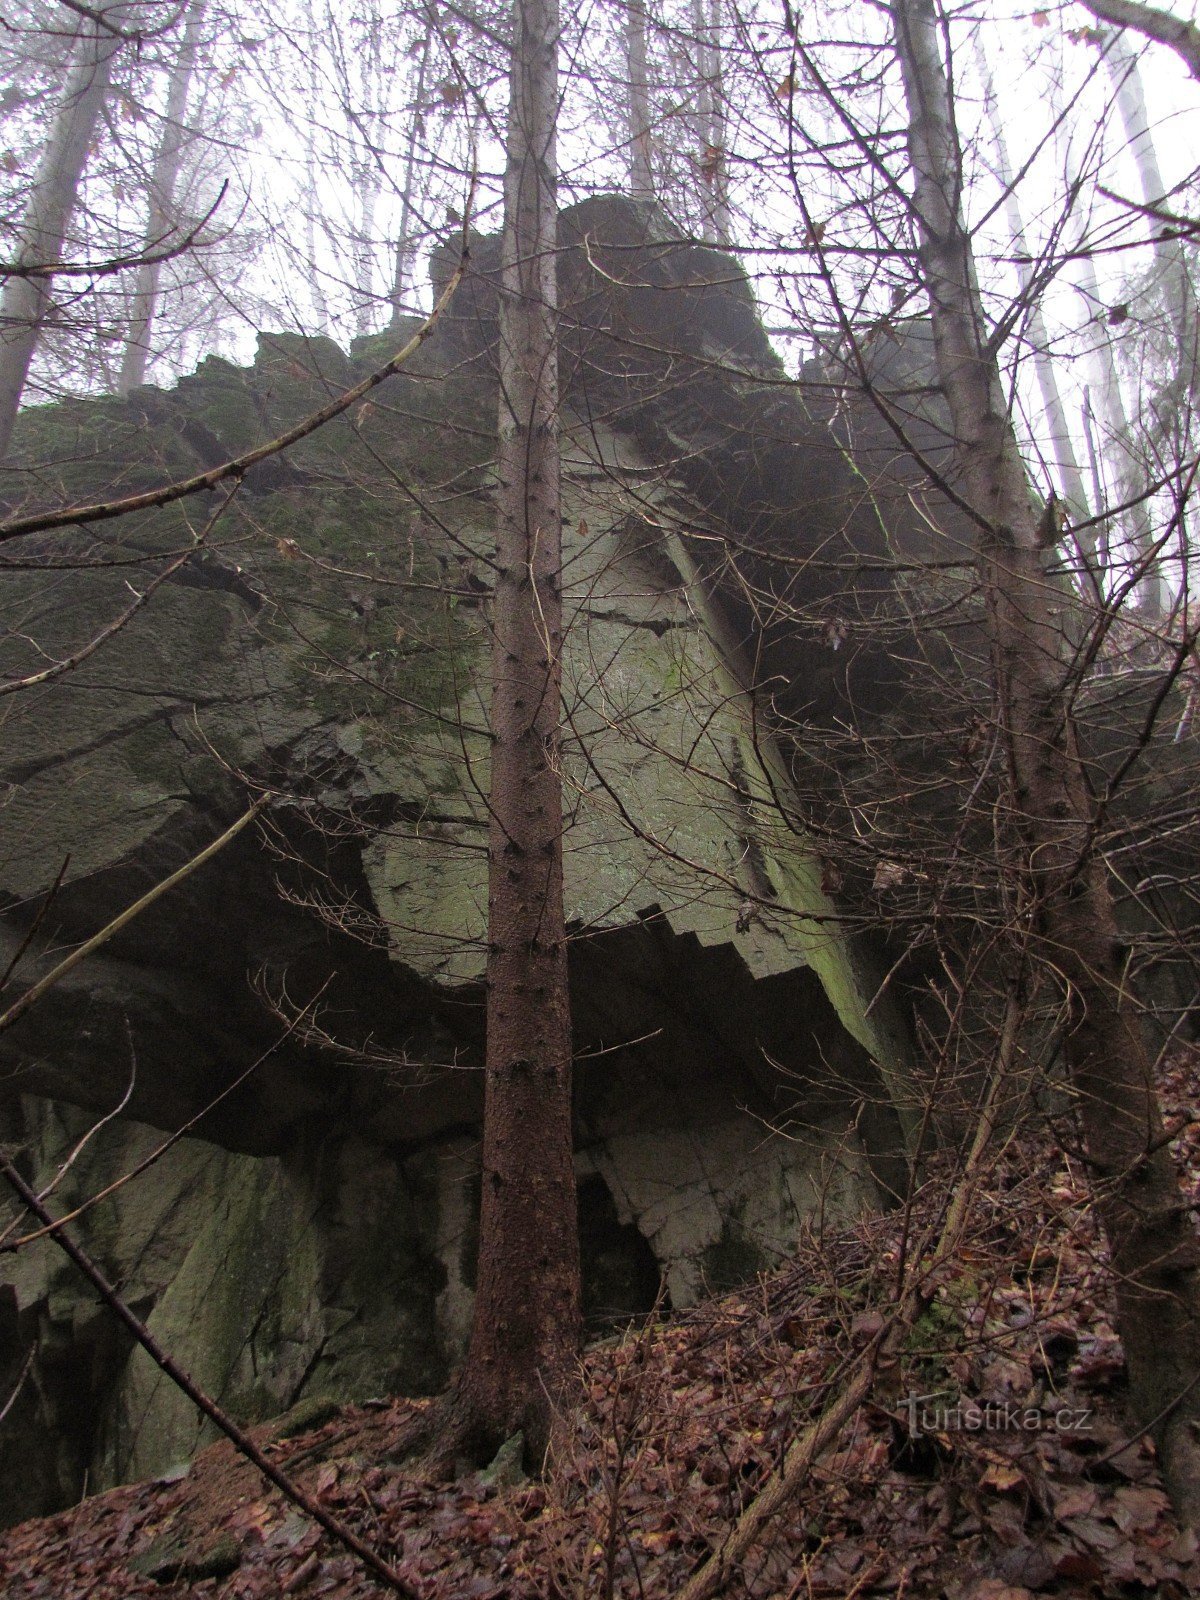 Oskavy nad Bedřichov valley - rocks